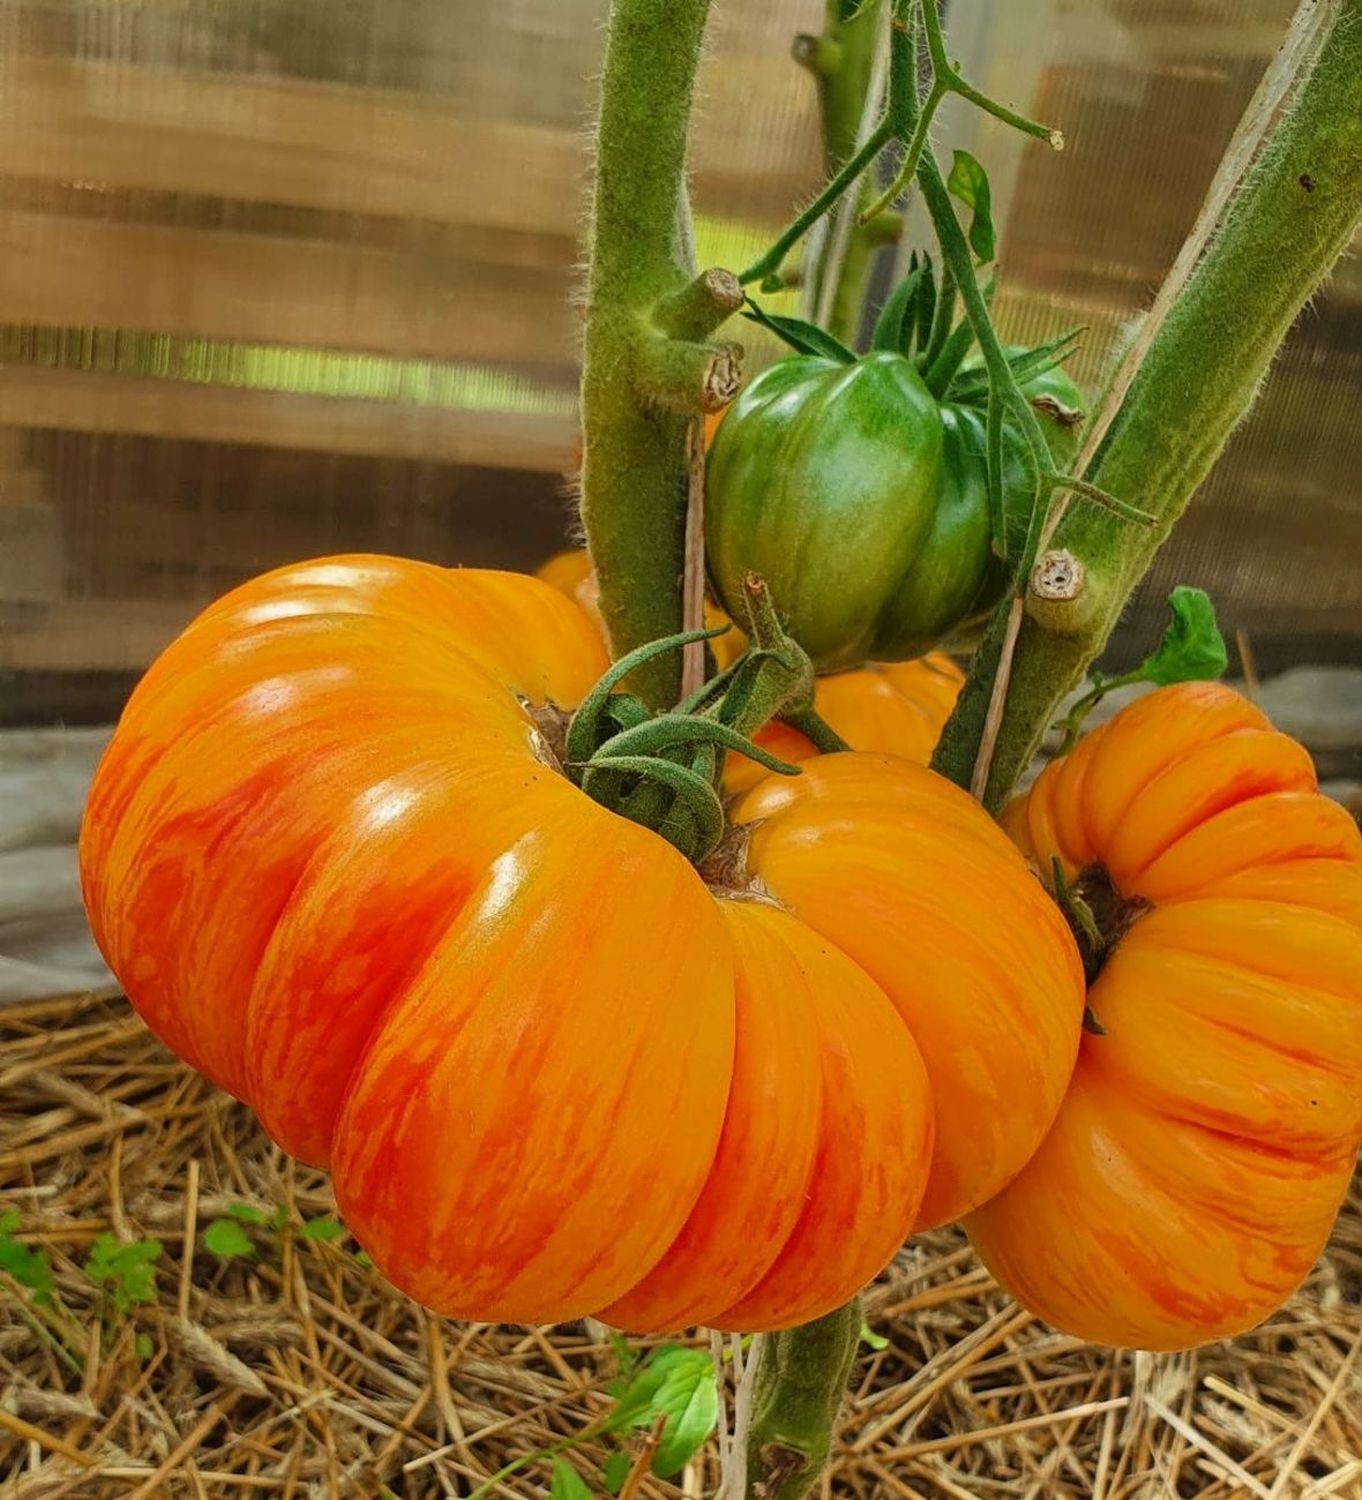 Veisliniai pomidorai – tobulas skonis